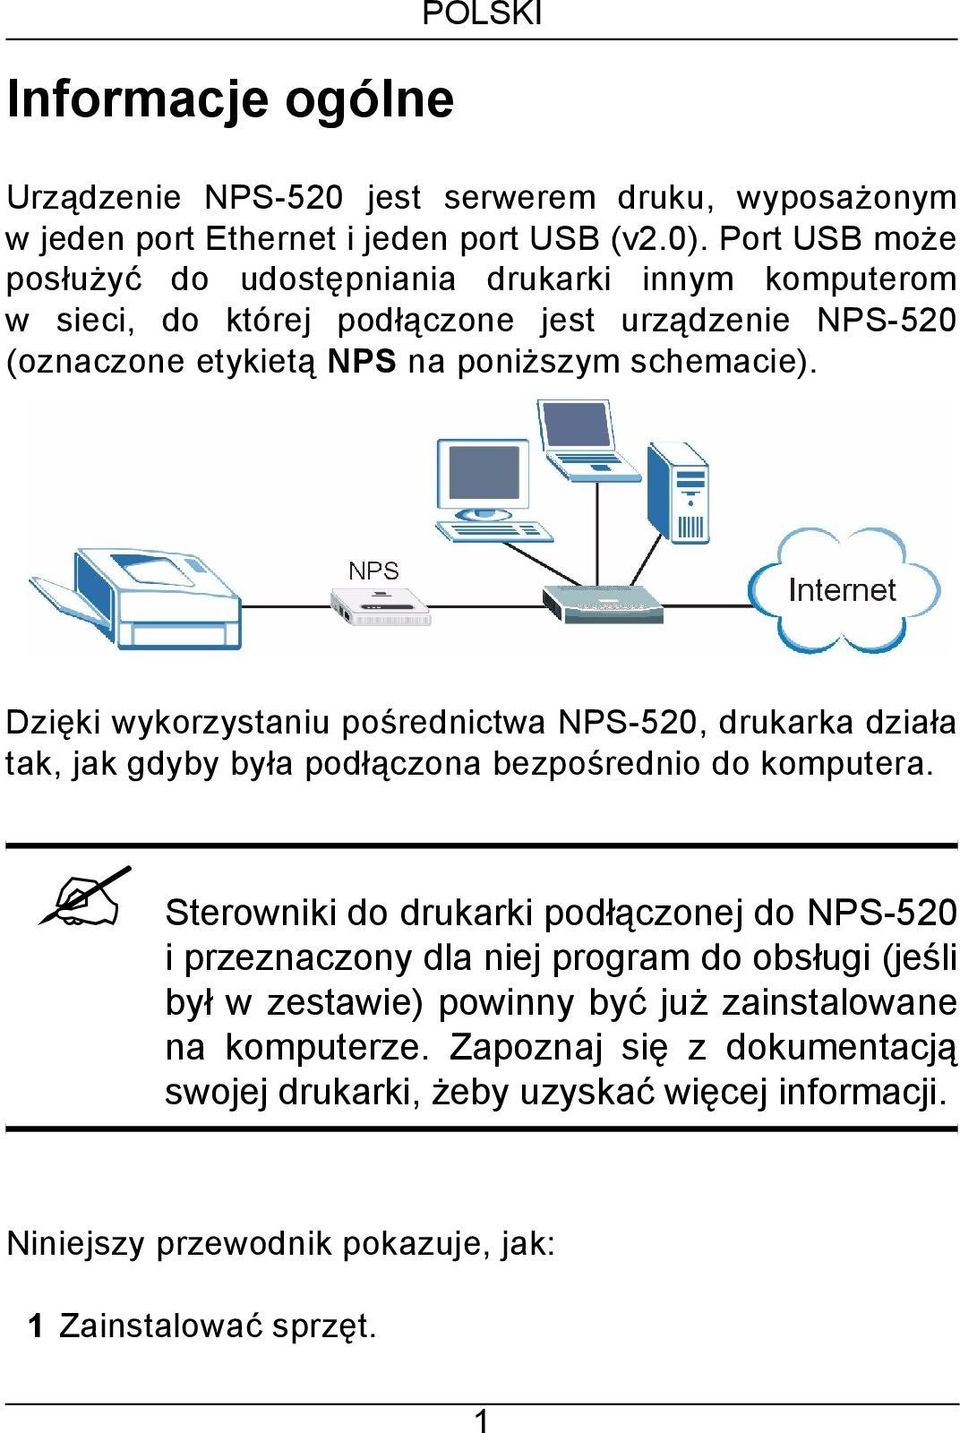 Dzięki wykorzystaniu pośrednictwa NPS-520, drukarka działa tak, jak gdyby była podłączona bezpośrednio do komputera.